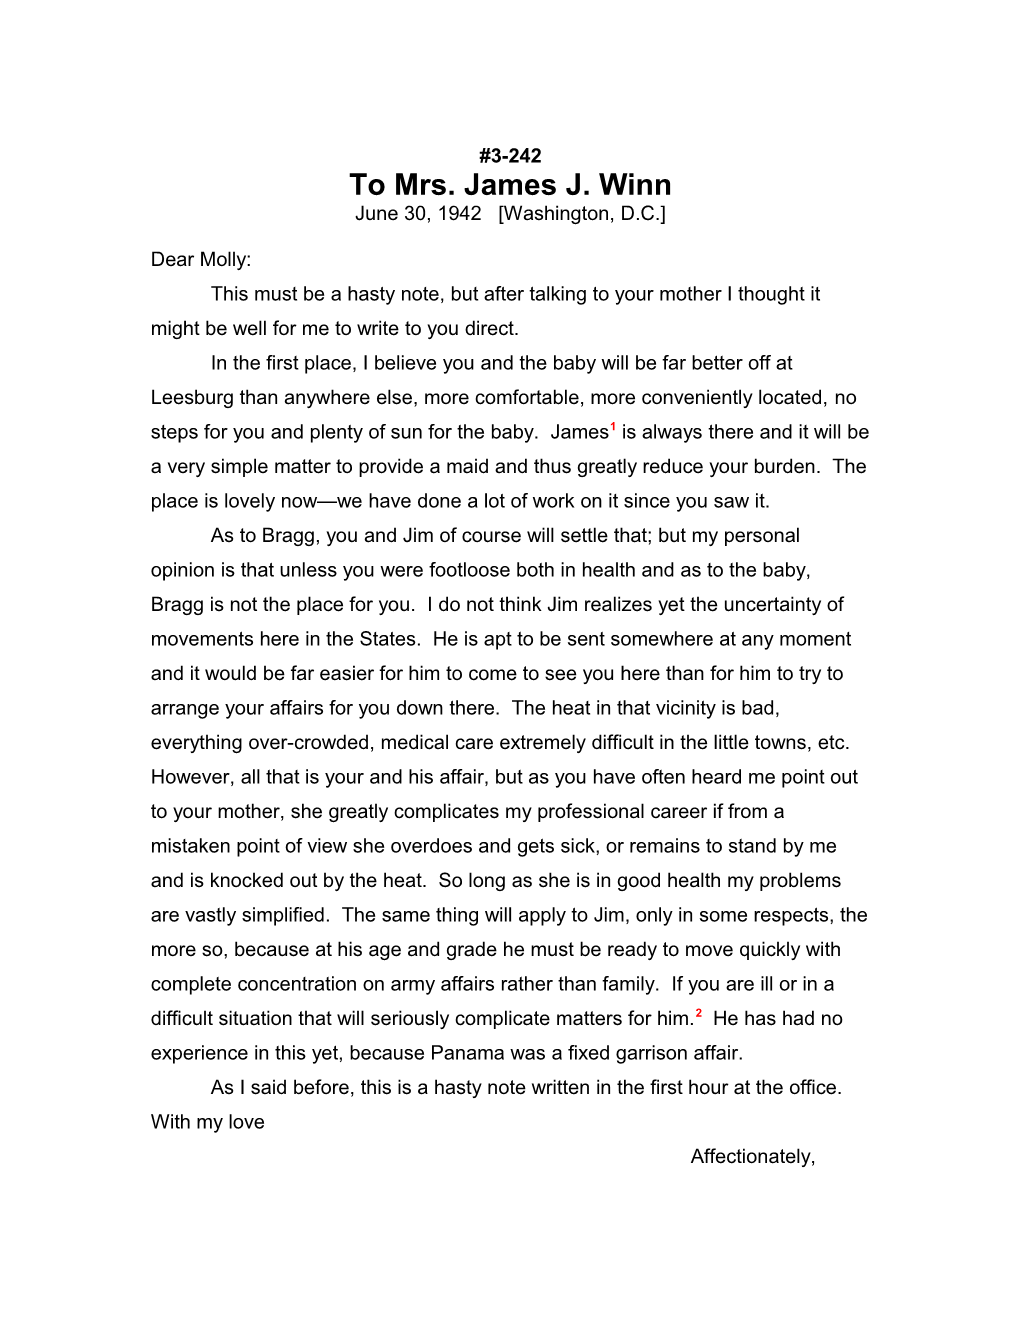 To Mrs. James J. Winn